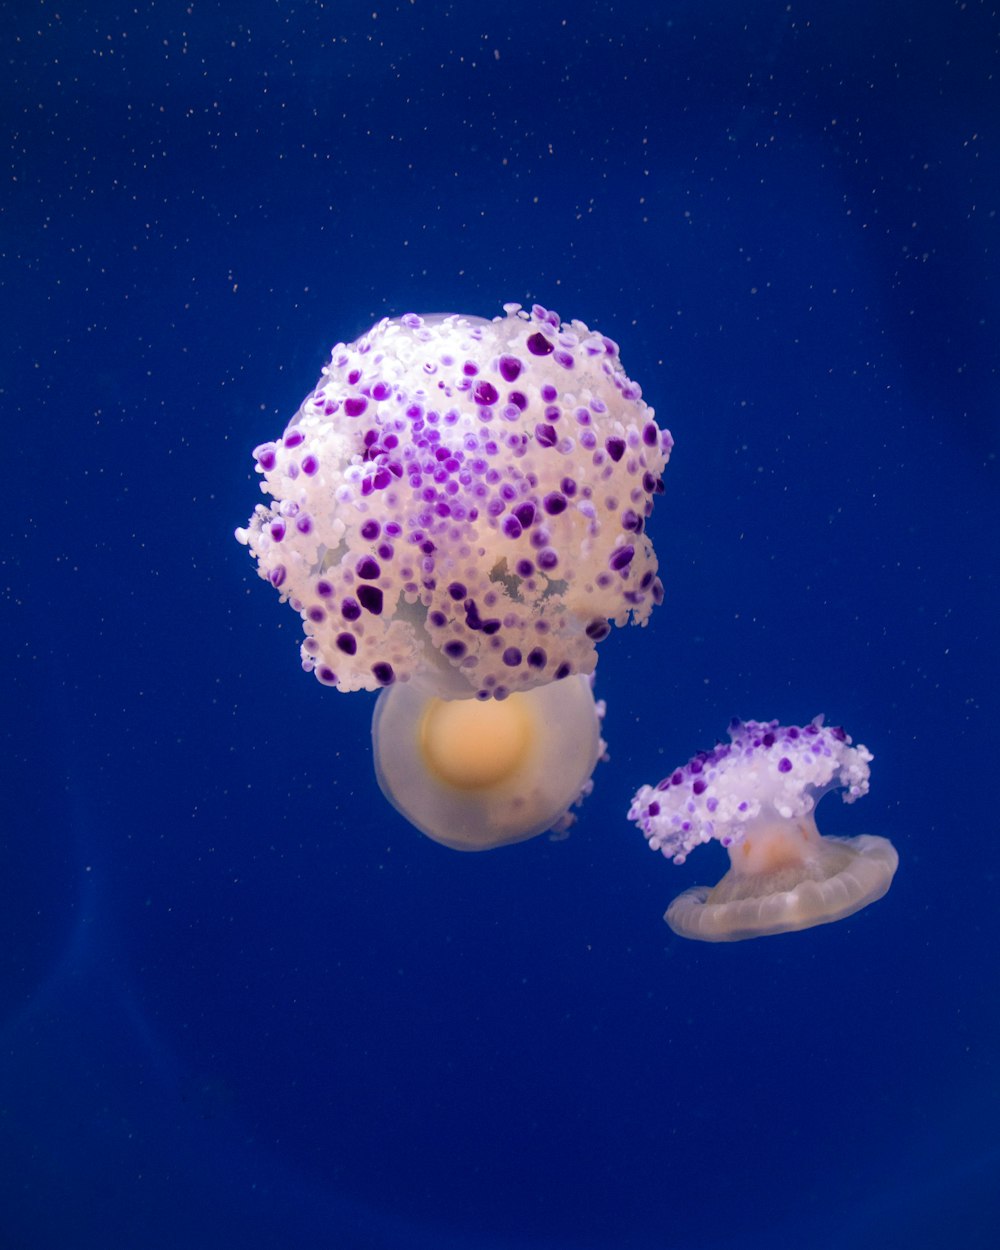 Un par de medusas moradas y blancas flotando en el agua